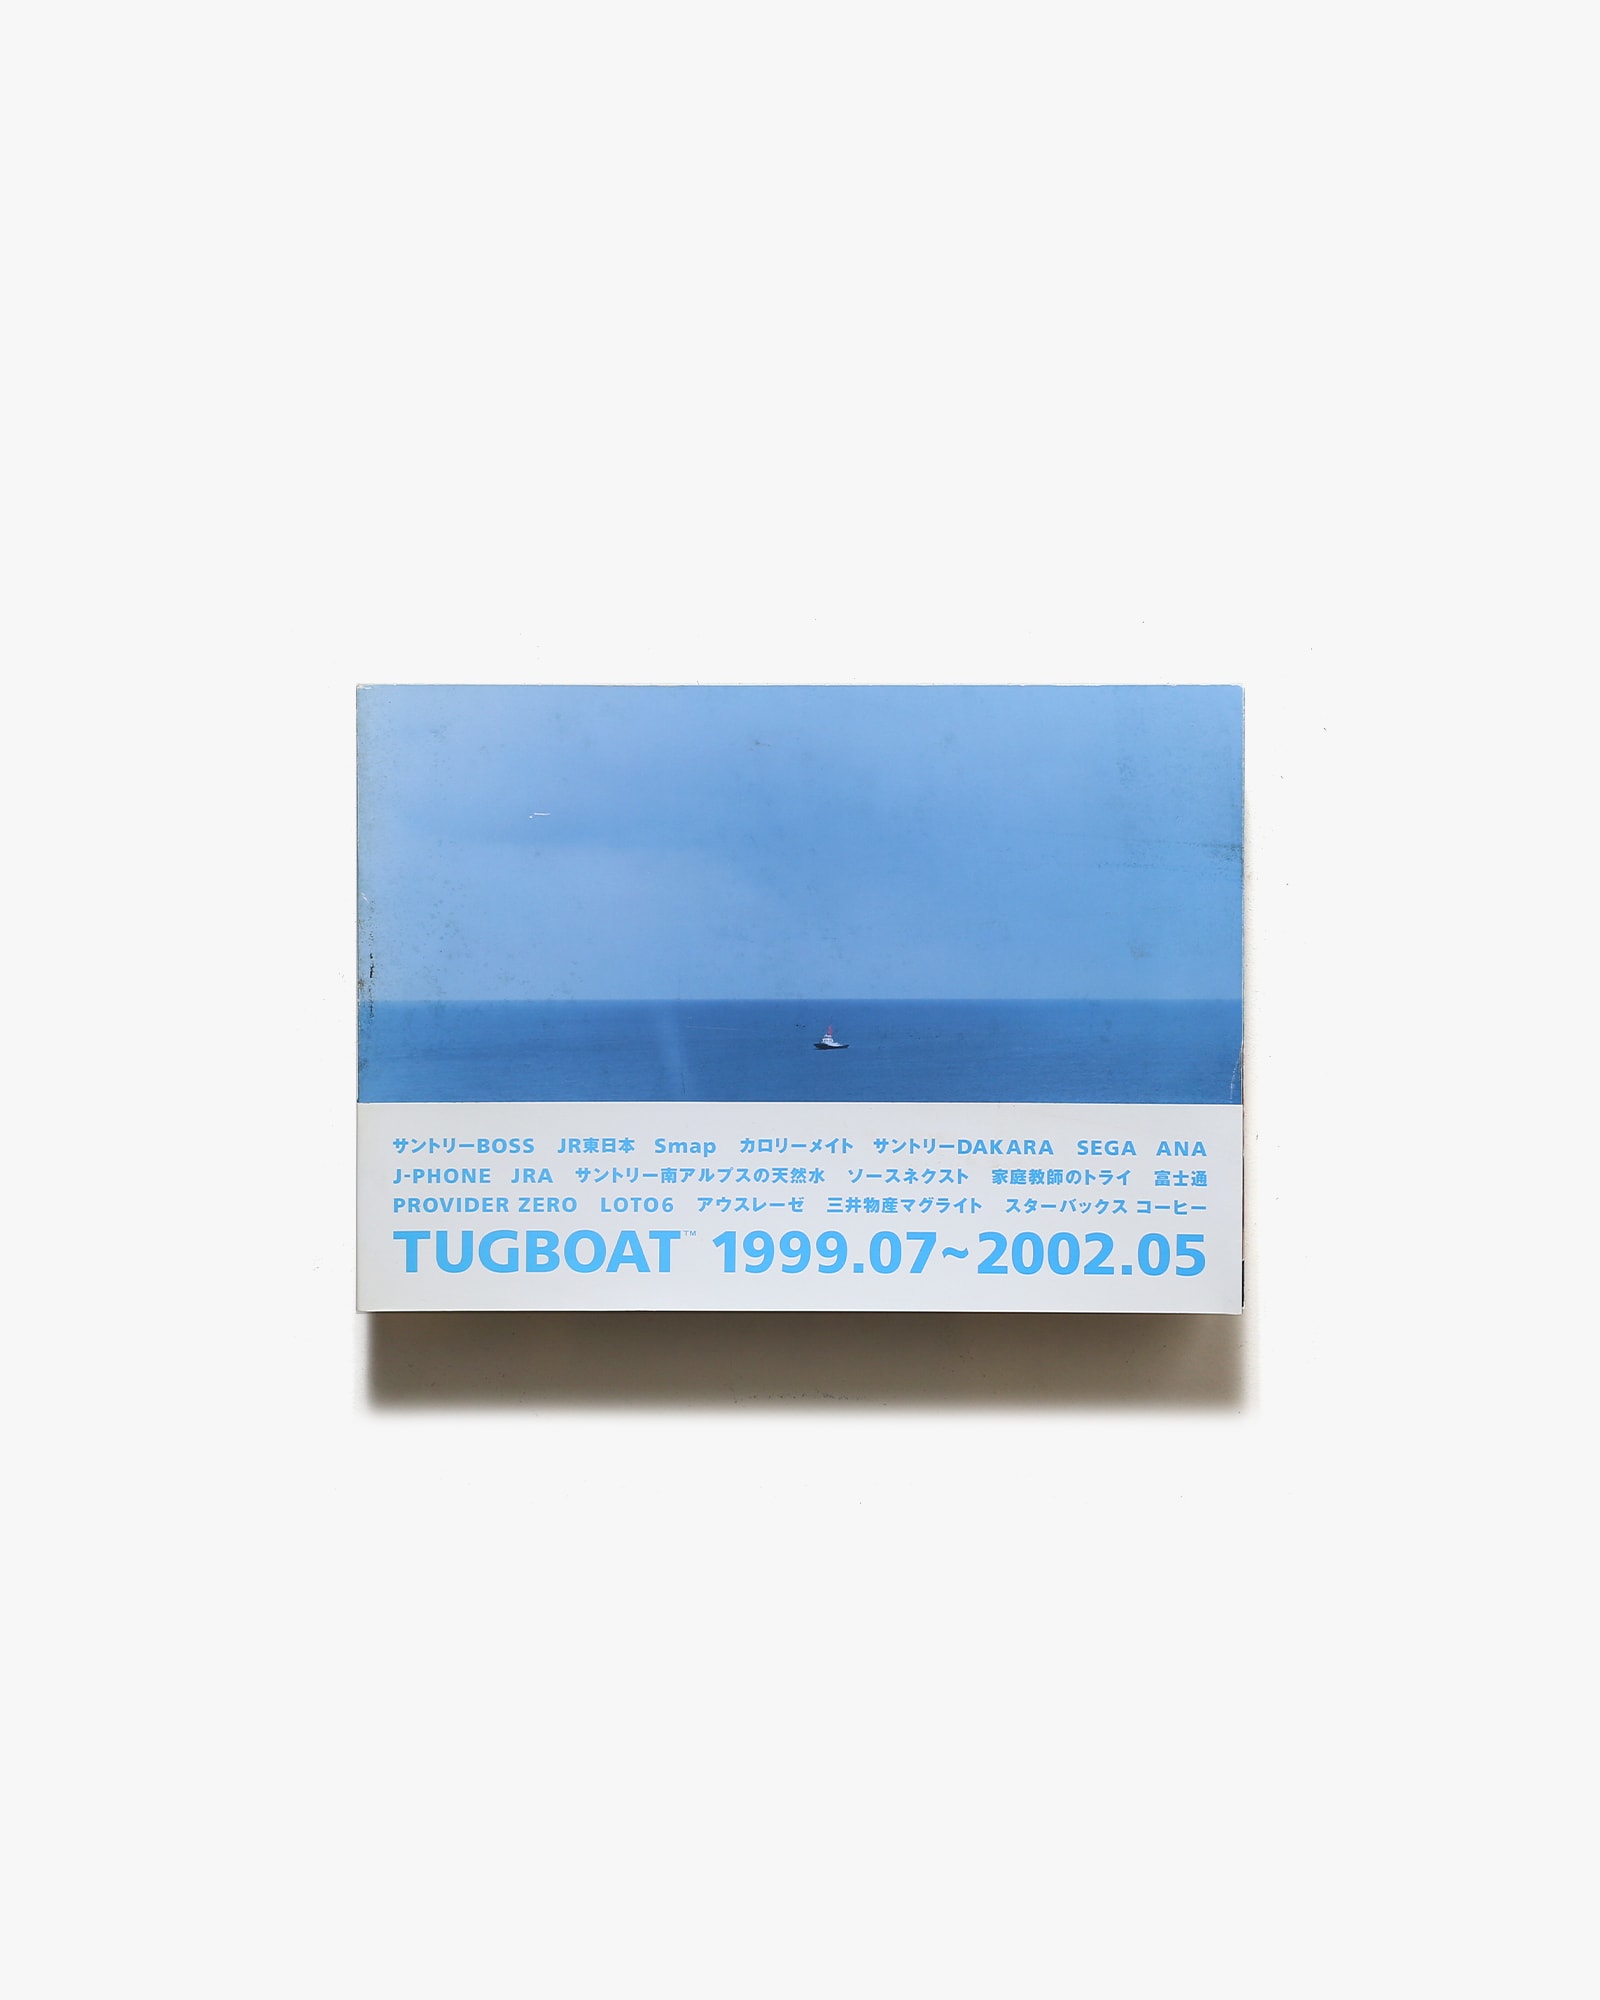 TUGBOAT 1999.07-2002.05